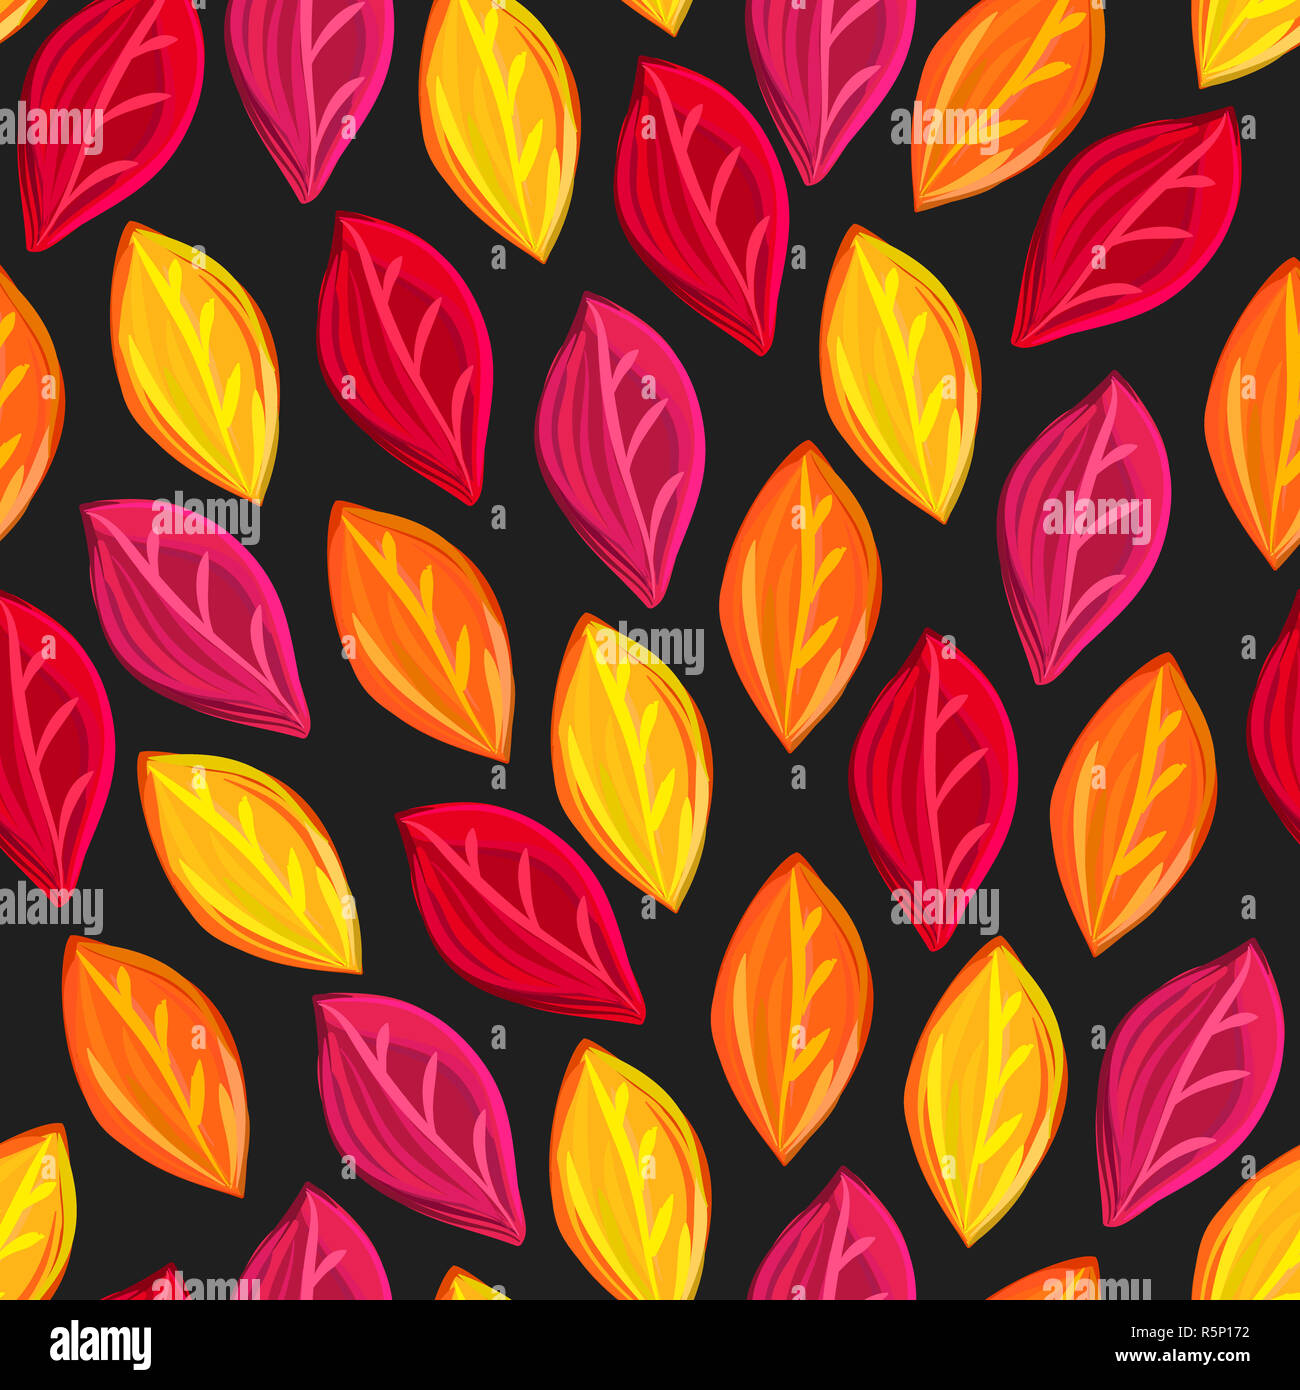 Transparente avec motif floral feuilles tombées. De l'automne. La chute des feuilles. Contexte artistique coloré Banque D'Images